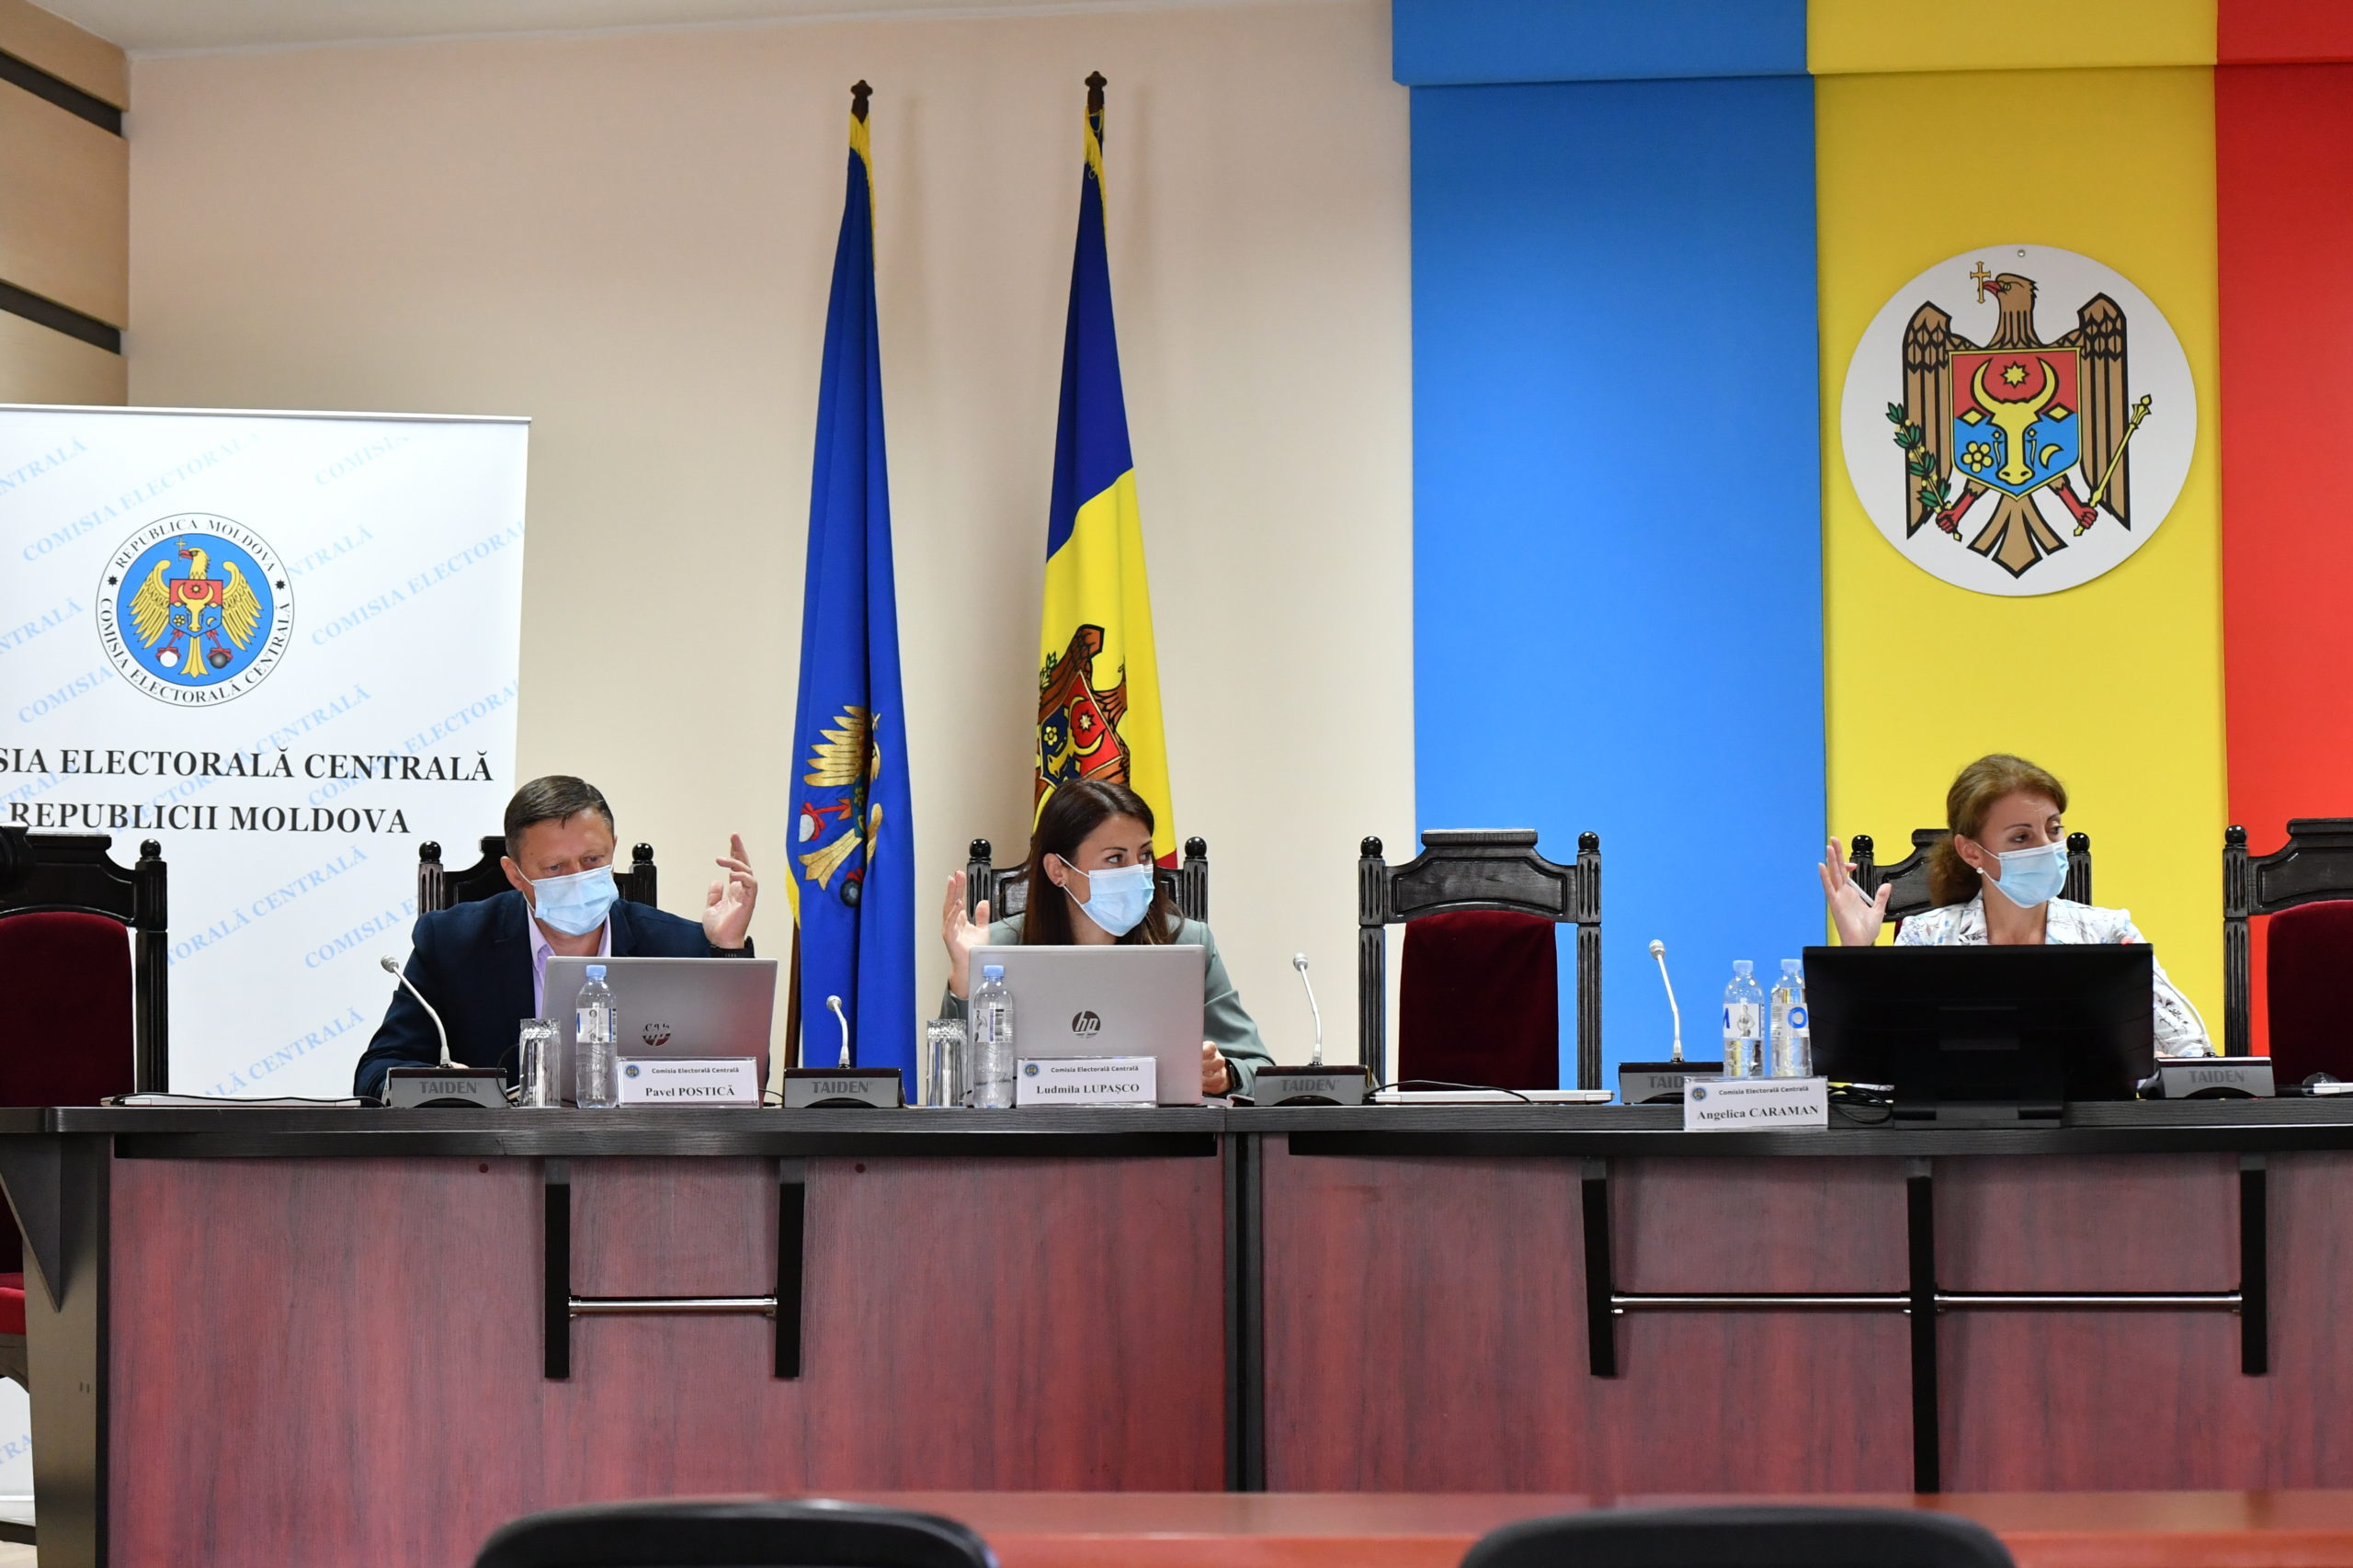 Бюллетени только на румынском и ЦИК «без оппозиции». Как в парламенте обсудили поправки в Кодекс о выборах